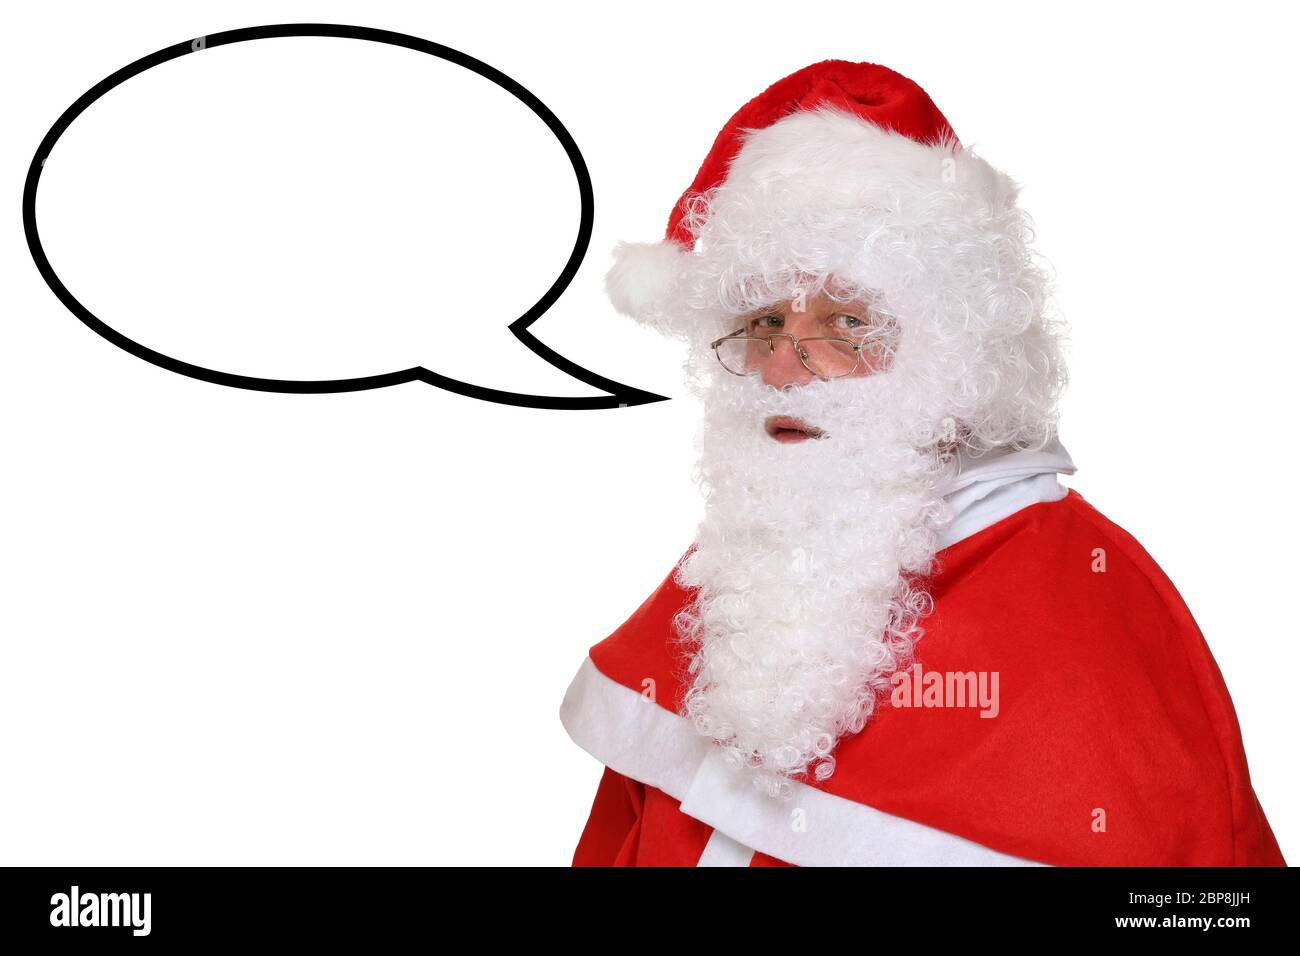 Weihnachtsmann Nikolaus Weihnachten beim sprechen mit Sprechblase und Textfreiraum Freisteller Stock Photo